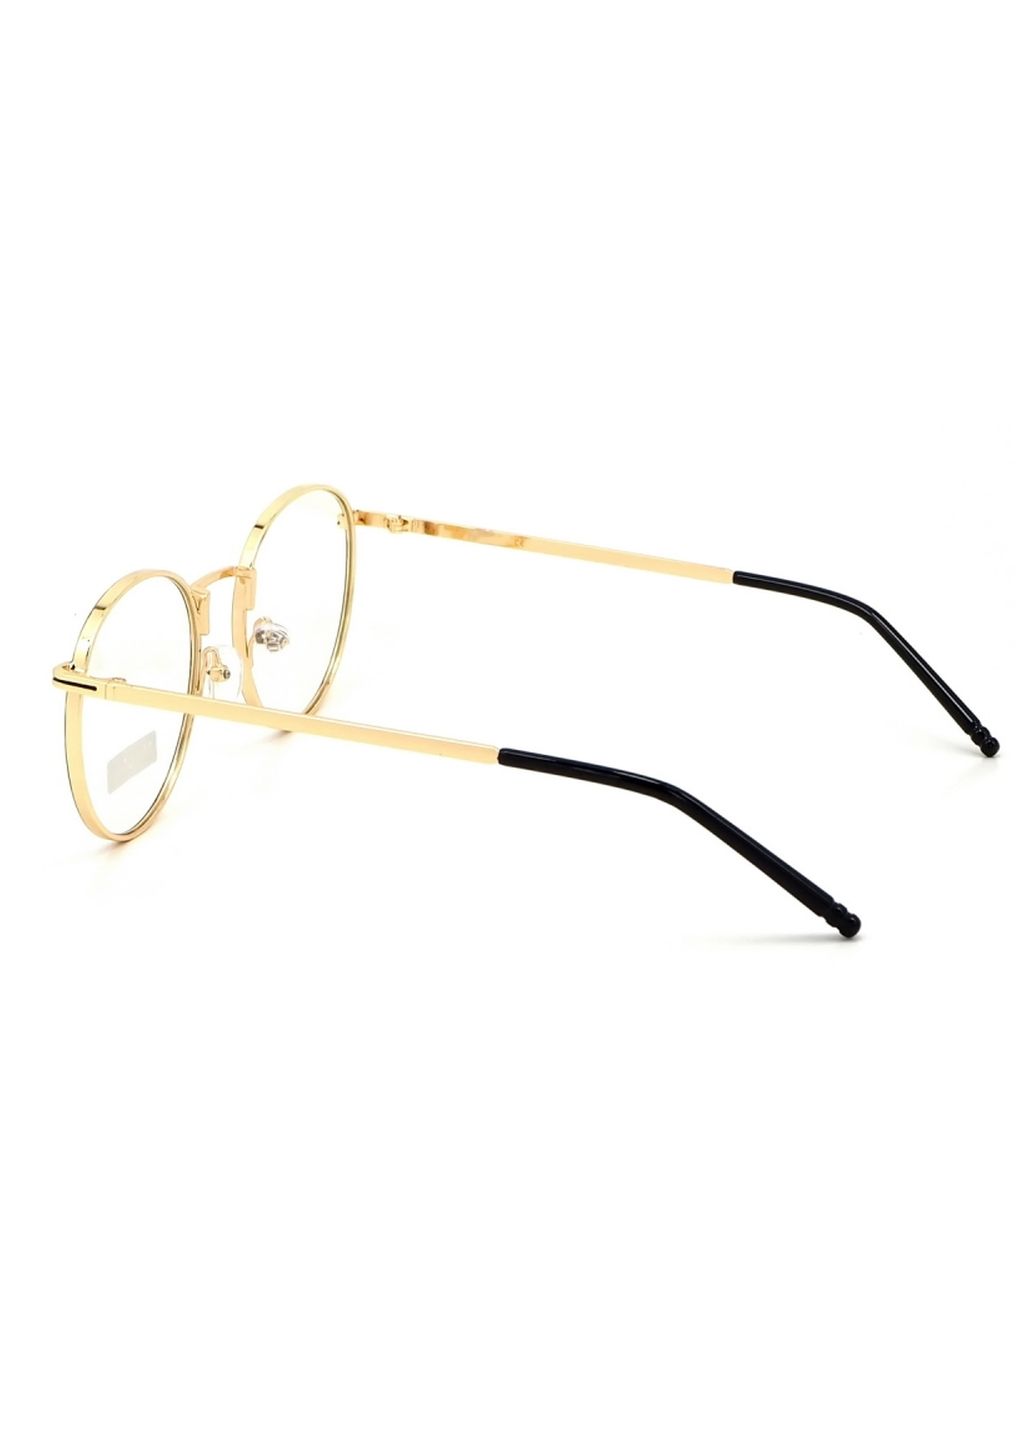 Купить Очки для работы за компьютером Cooper Glasses в золотой оправе 124003 в интернет-магазине